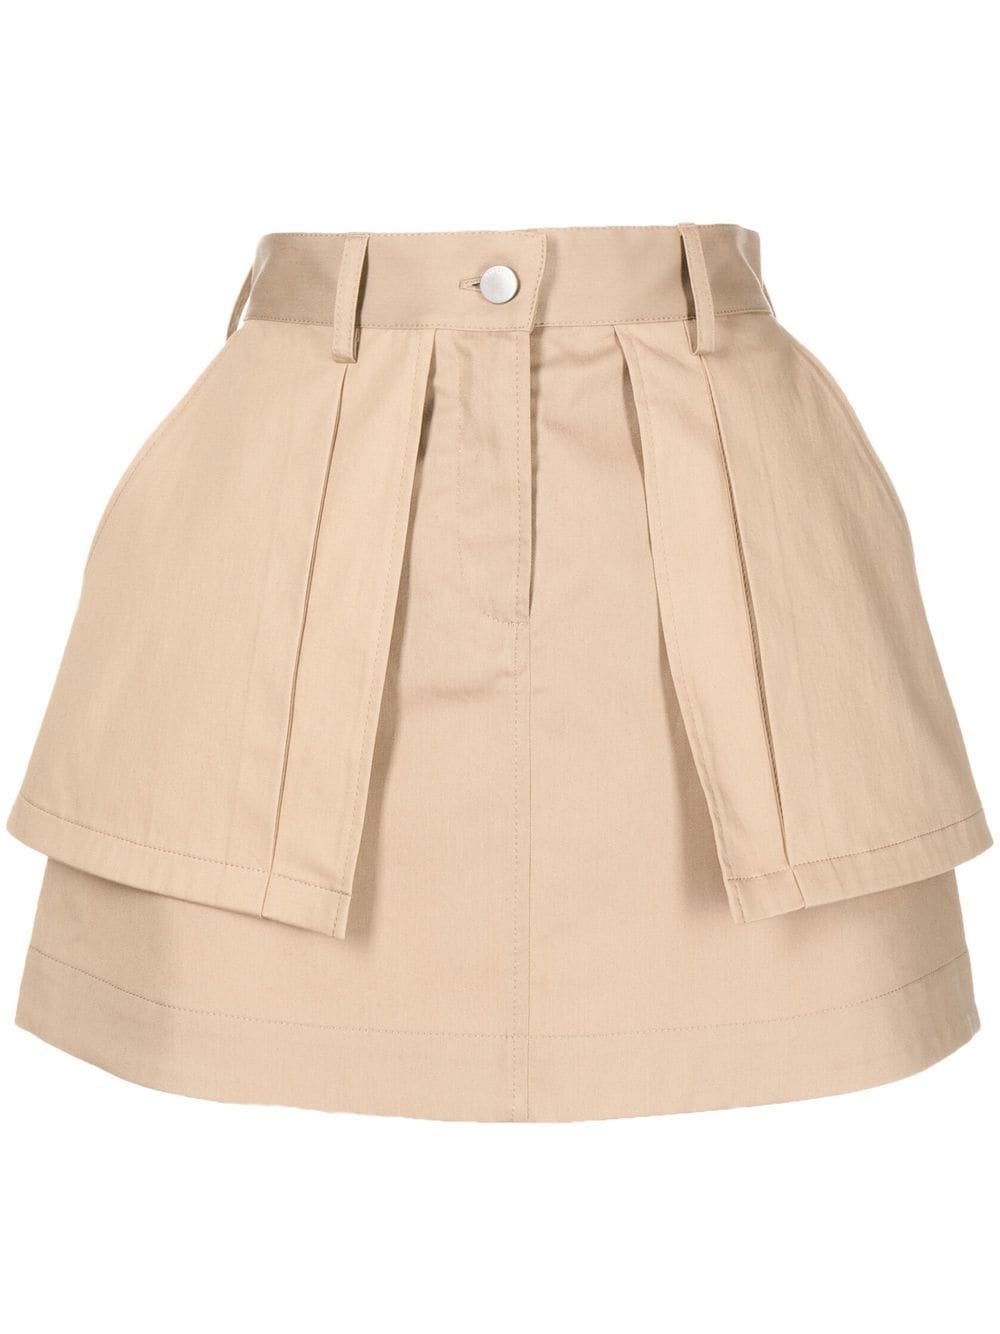 J.W. Anderson Beige Stretch-cotton Miniskirt